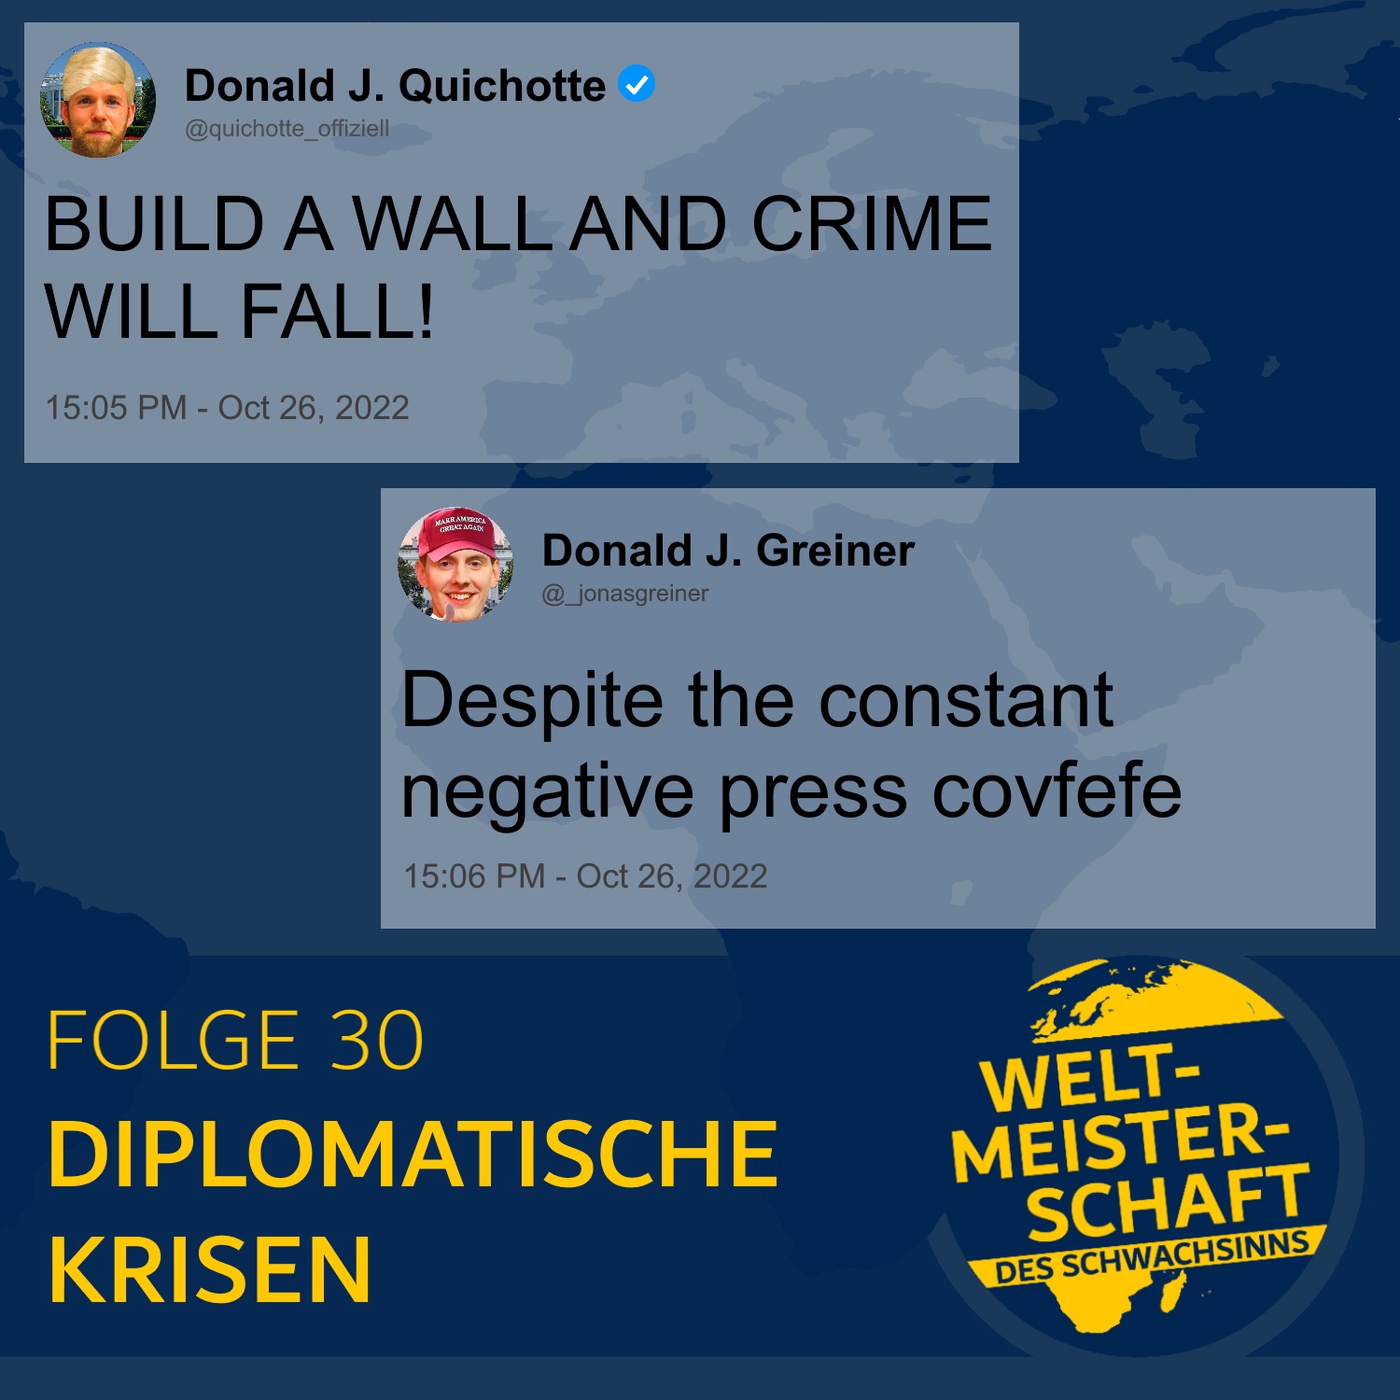 Diplomatische Krisen